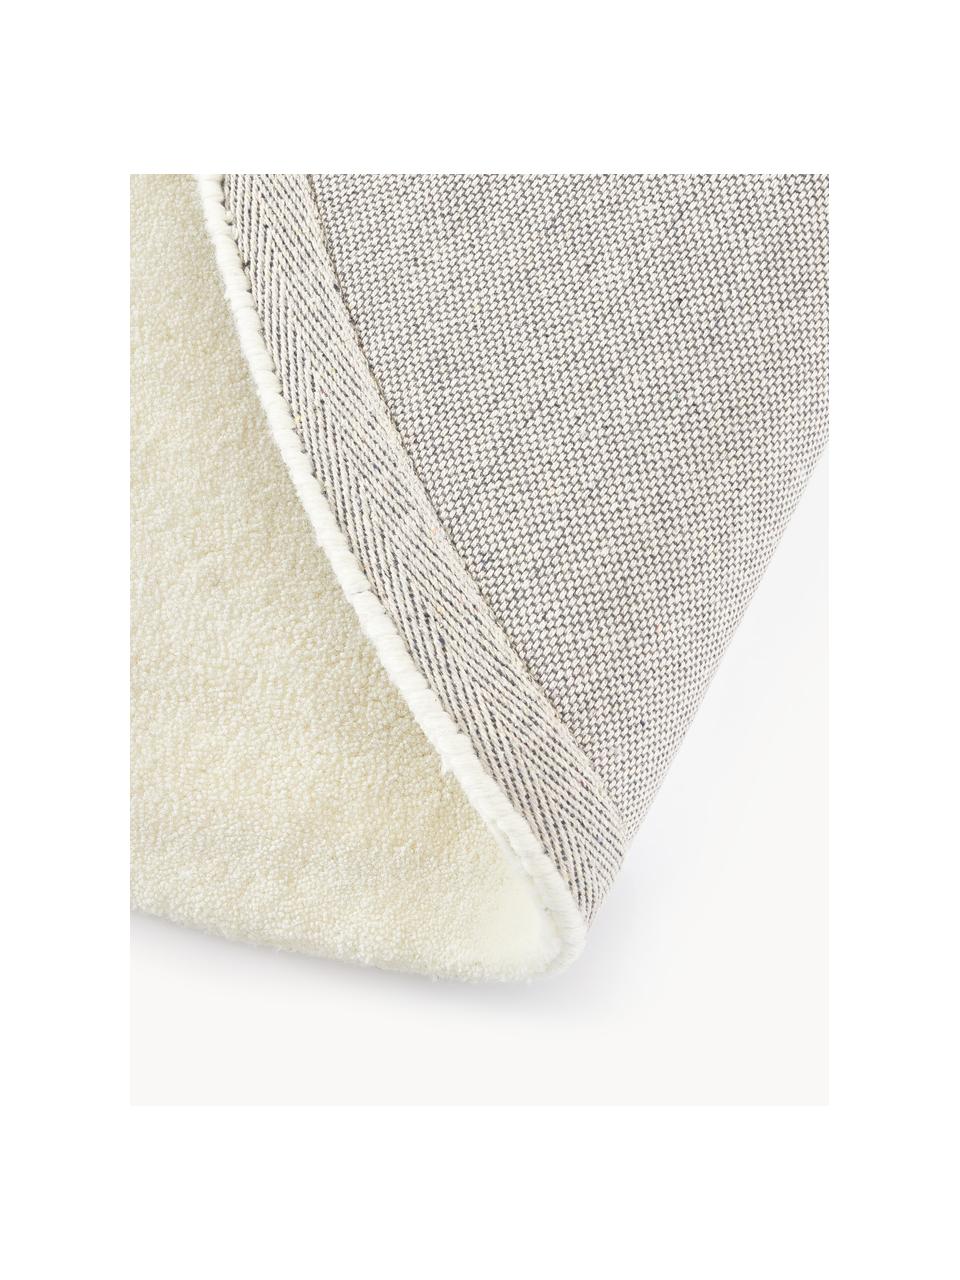 Kulatý ručně všívaný vlněný koberec s nízkým vlasem Jadie, Krémově bílá, Ø 150 cm (velikost M)